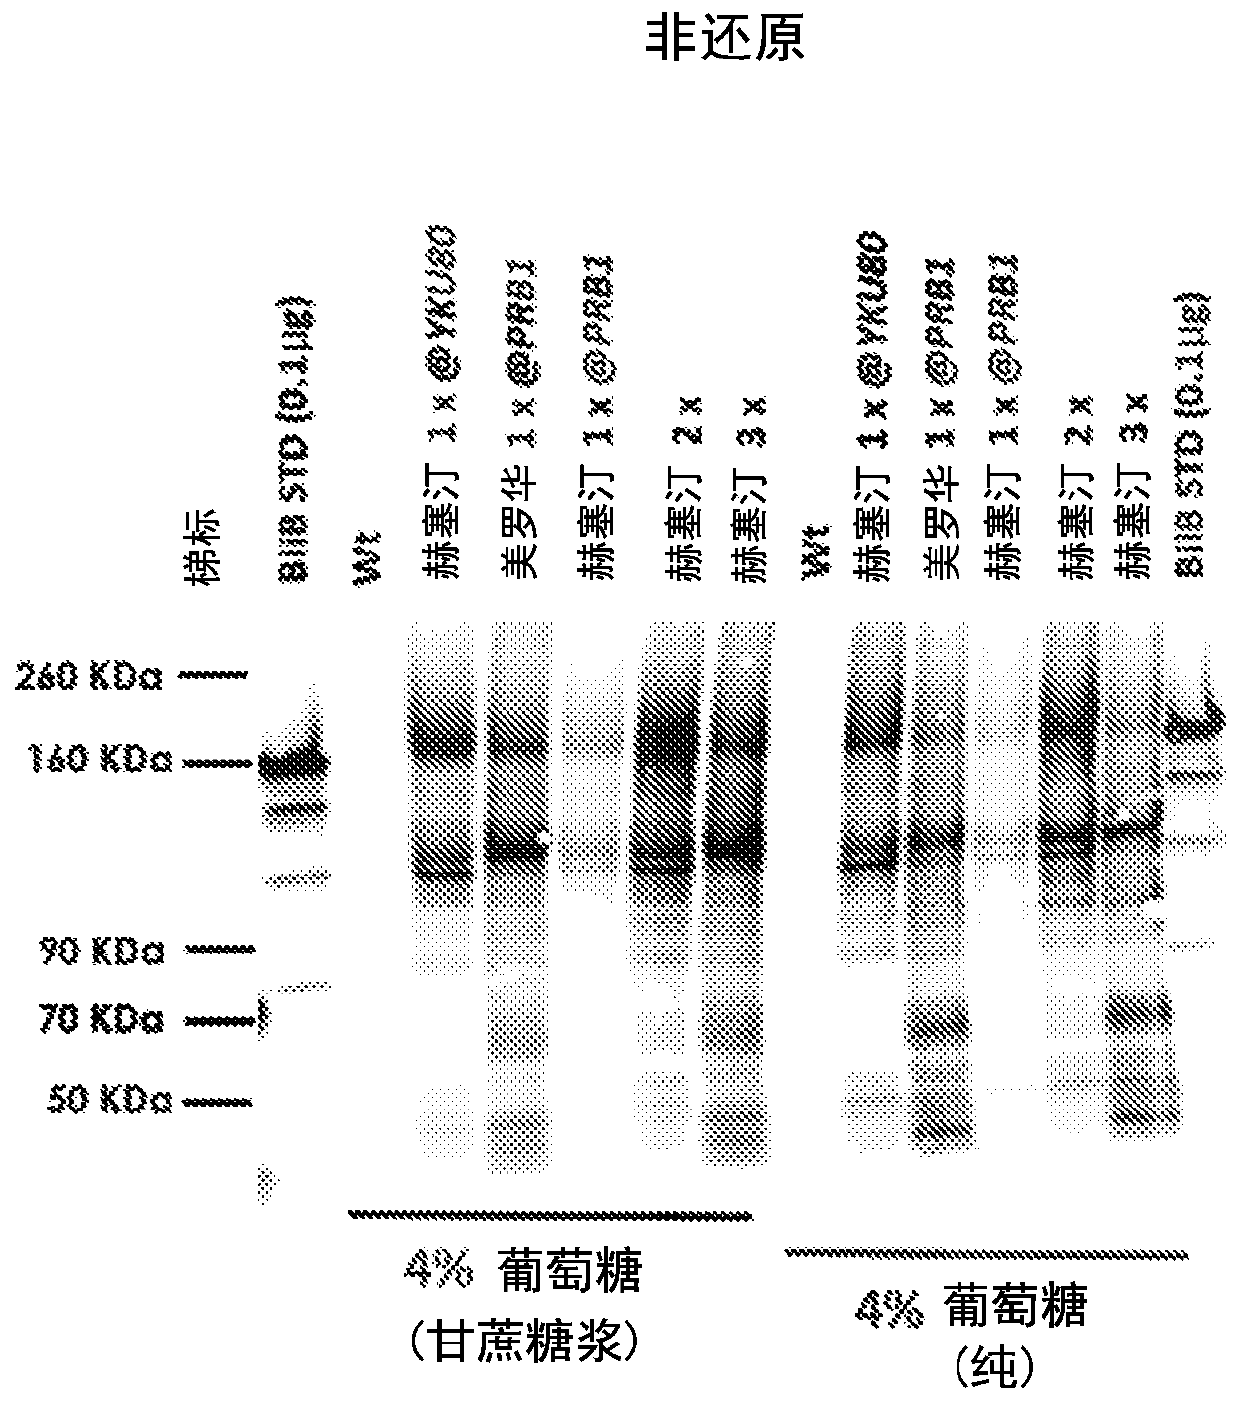 Methods for genetic engineering kluyveromyces host cells